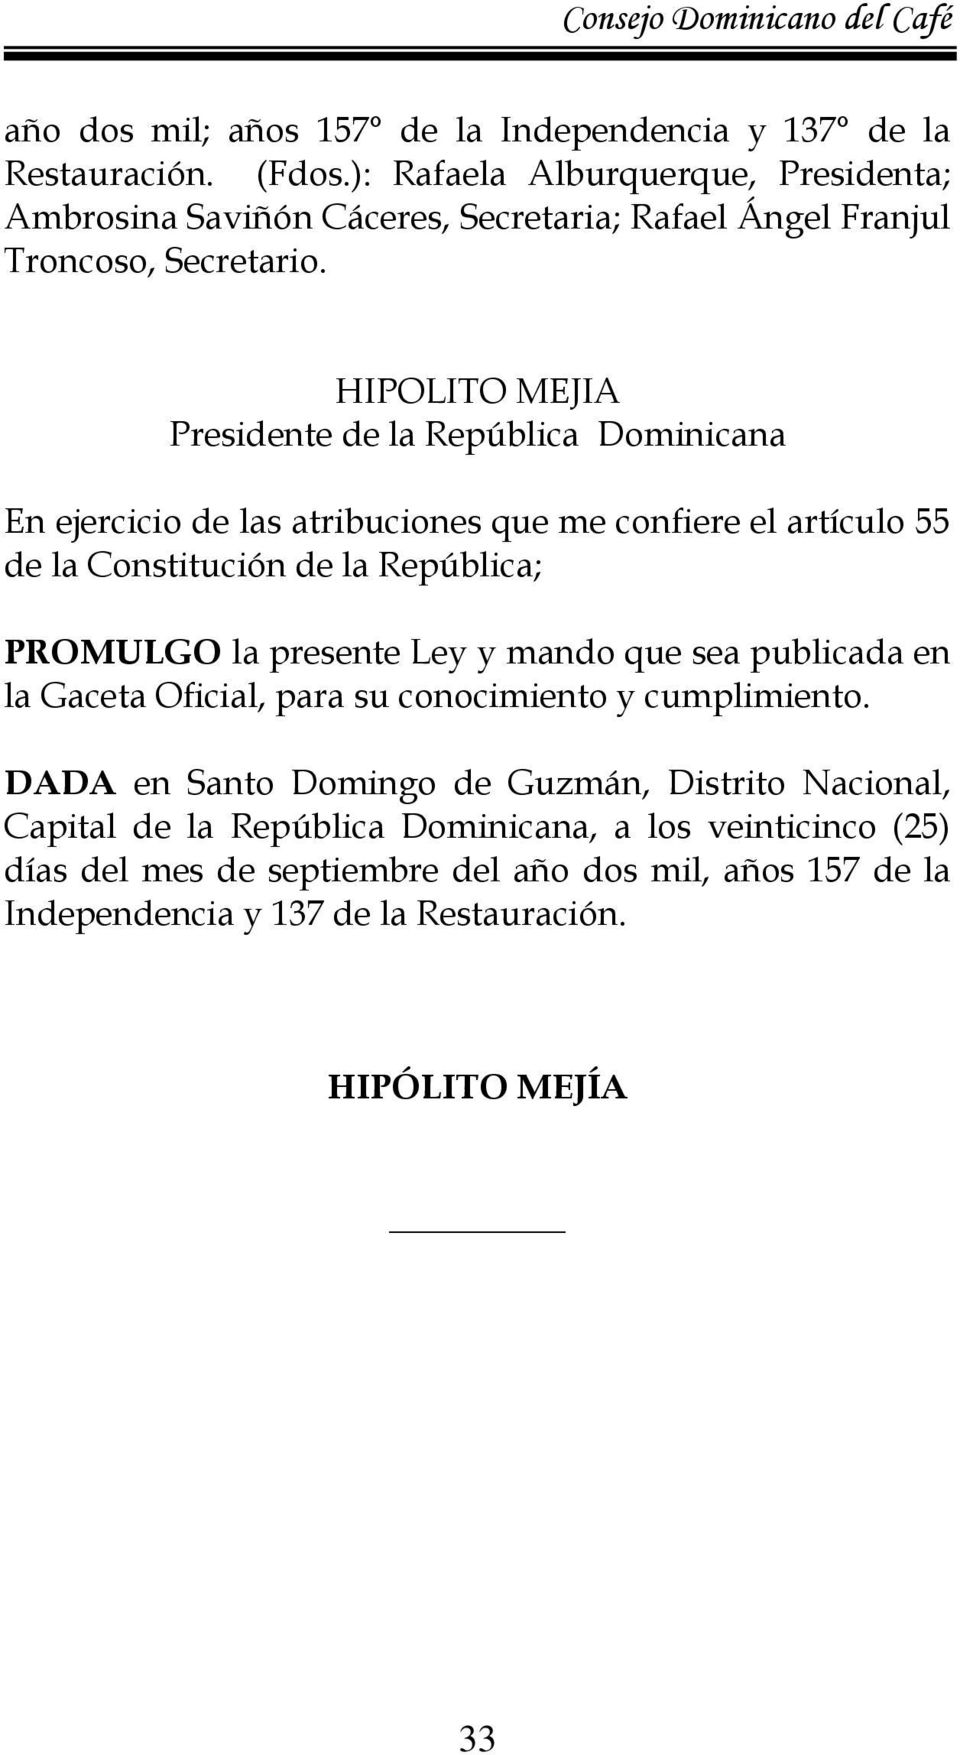 HIPOLITO MEJIA Presidente de la República Dominicana En ejercicio de las atribuciones que me confiere el artículo 55 de la Constitución de la República; PROMULGO la